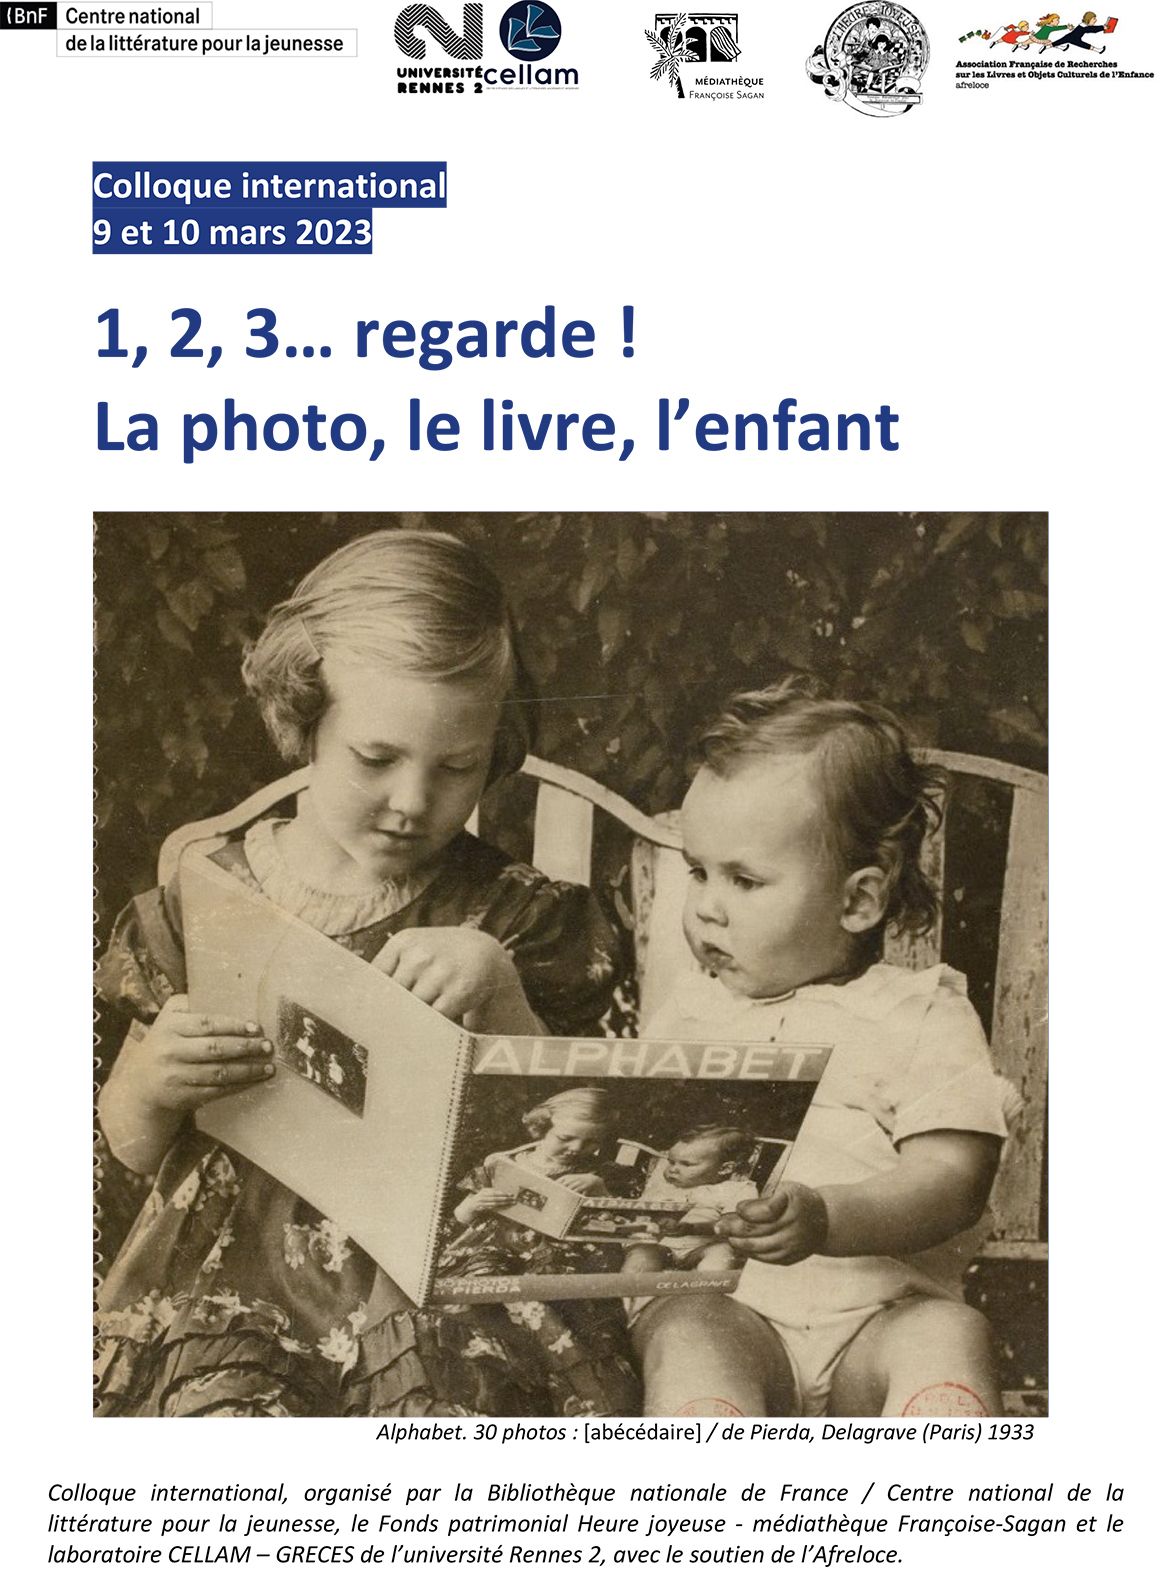 1, 2, 3… regarde ! La photo, le livre, l’enfant (Paris)